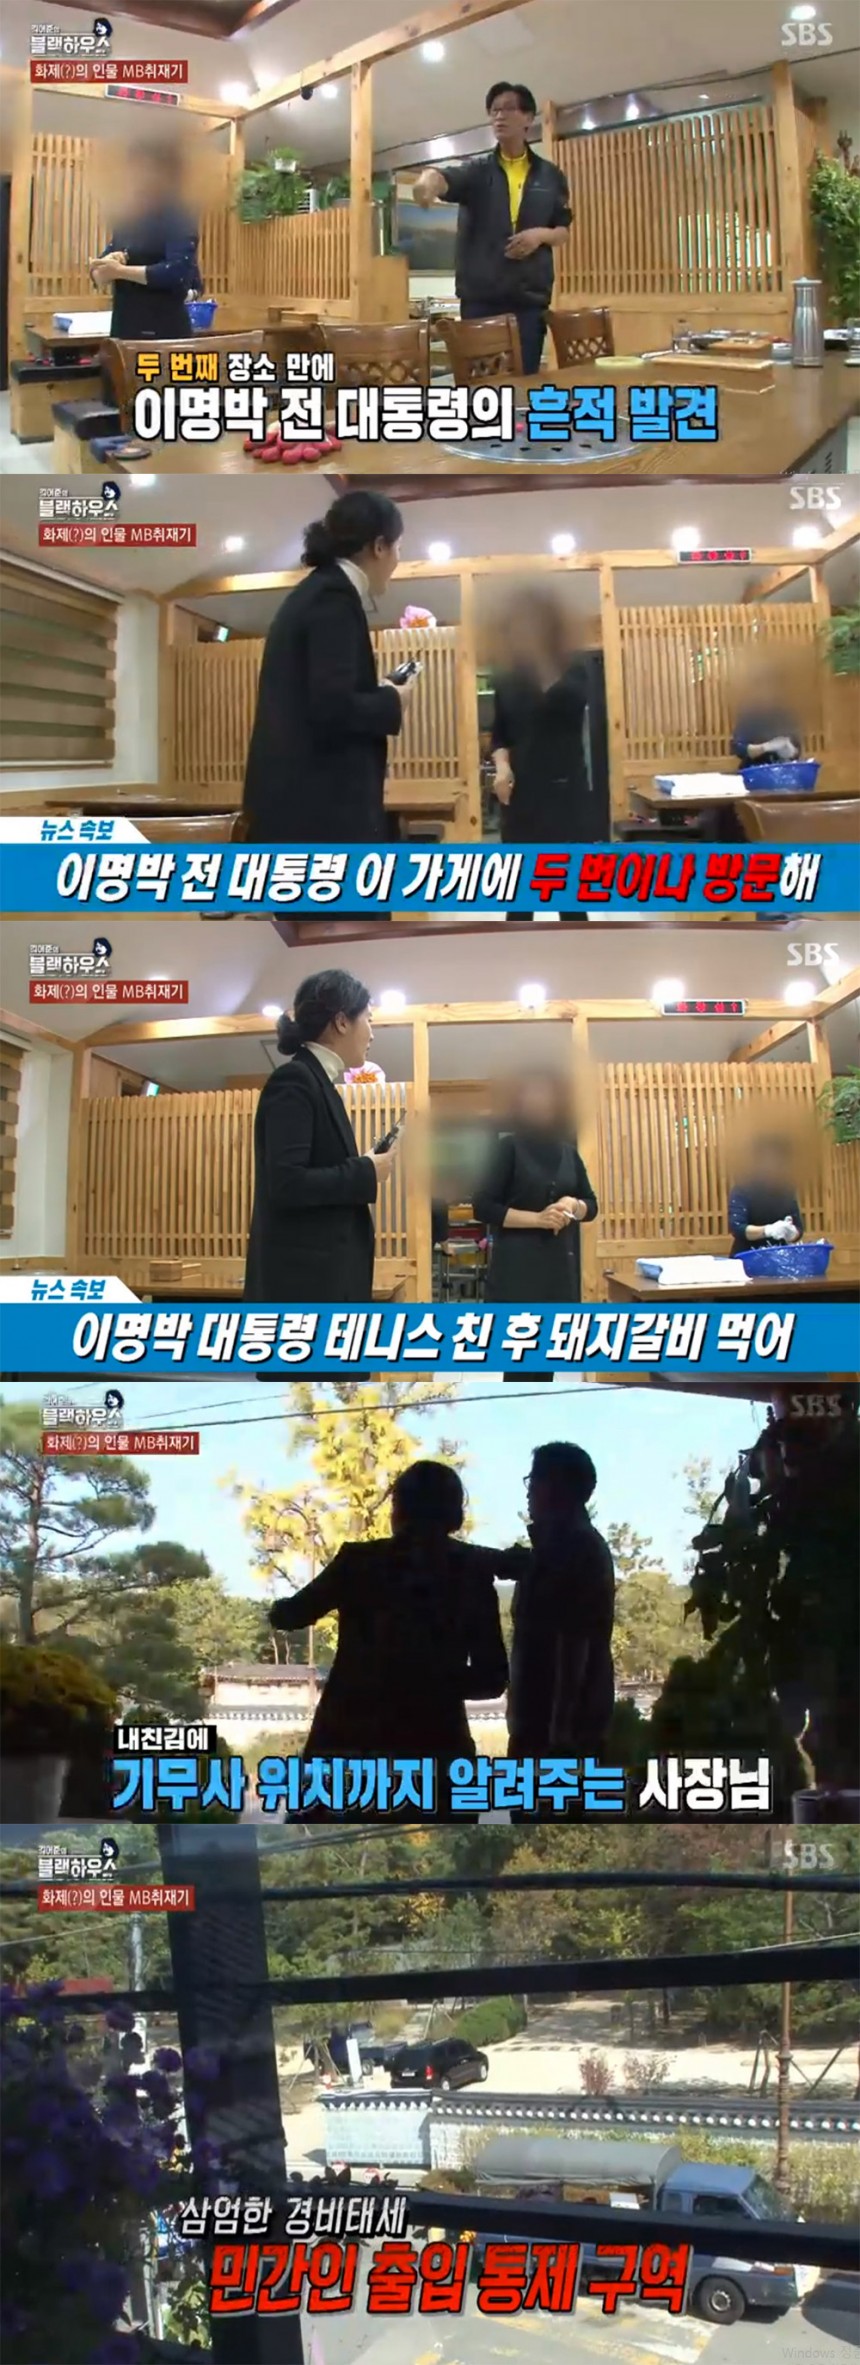  SBS ‘김어준의 블랙하우스’ 방송 캡처